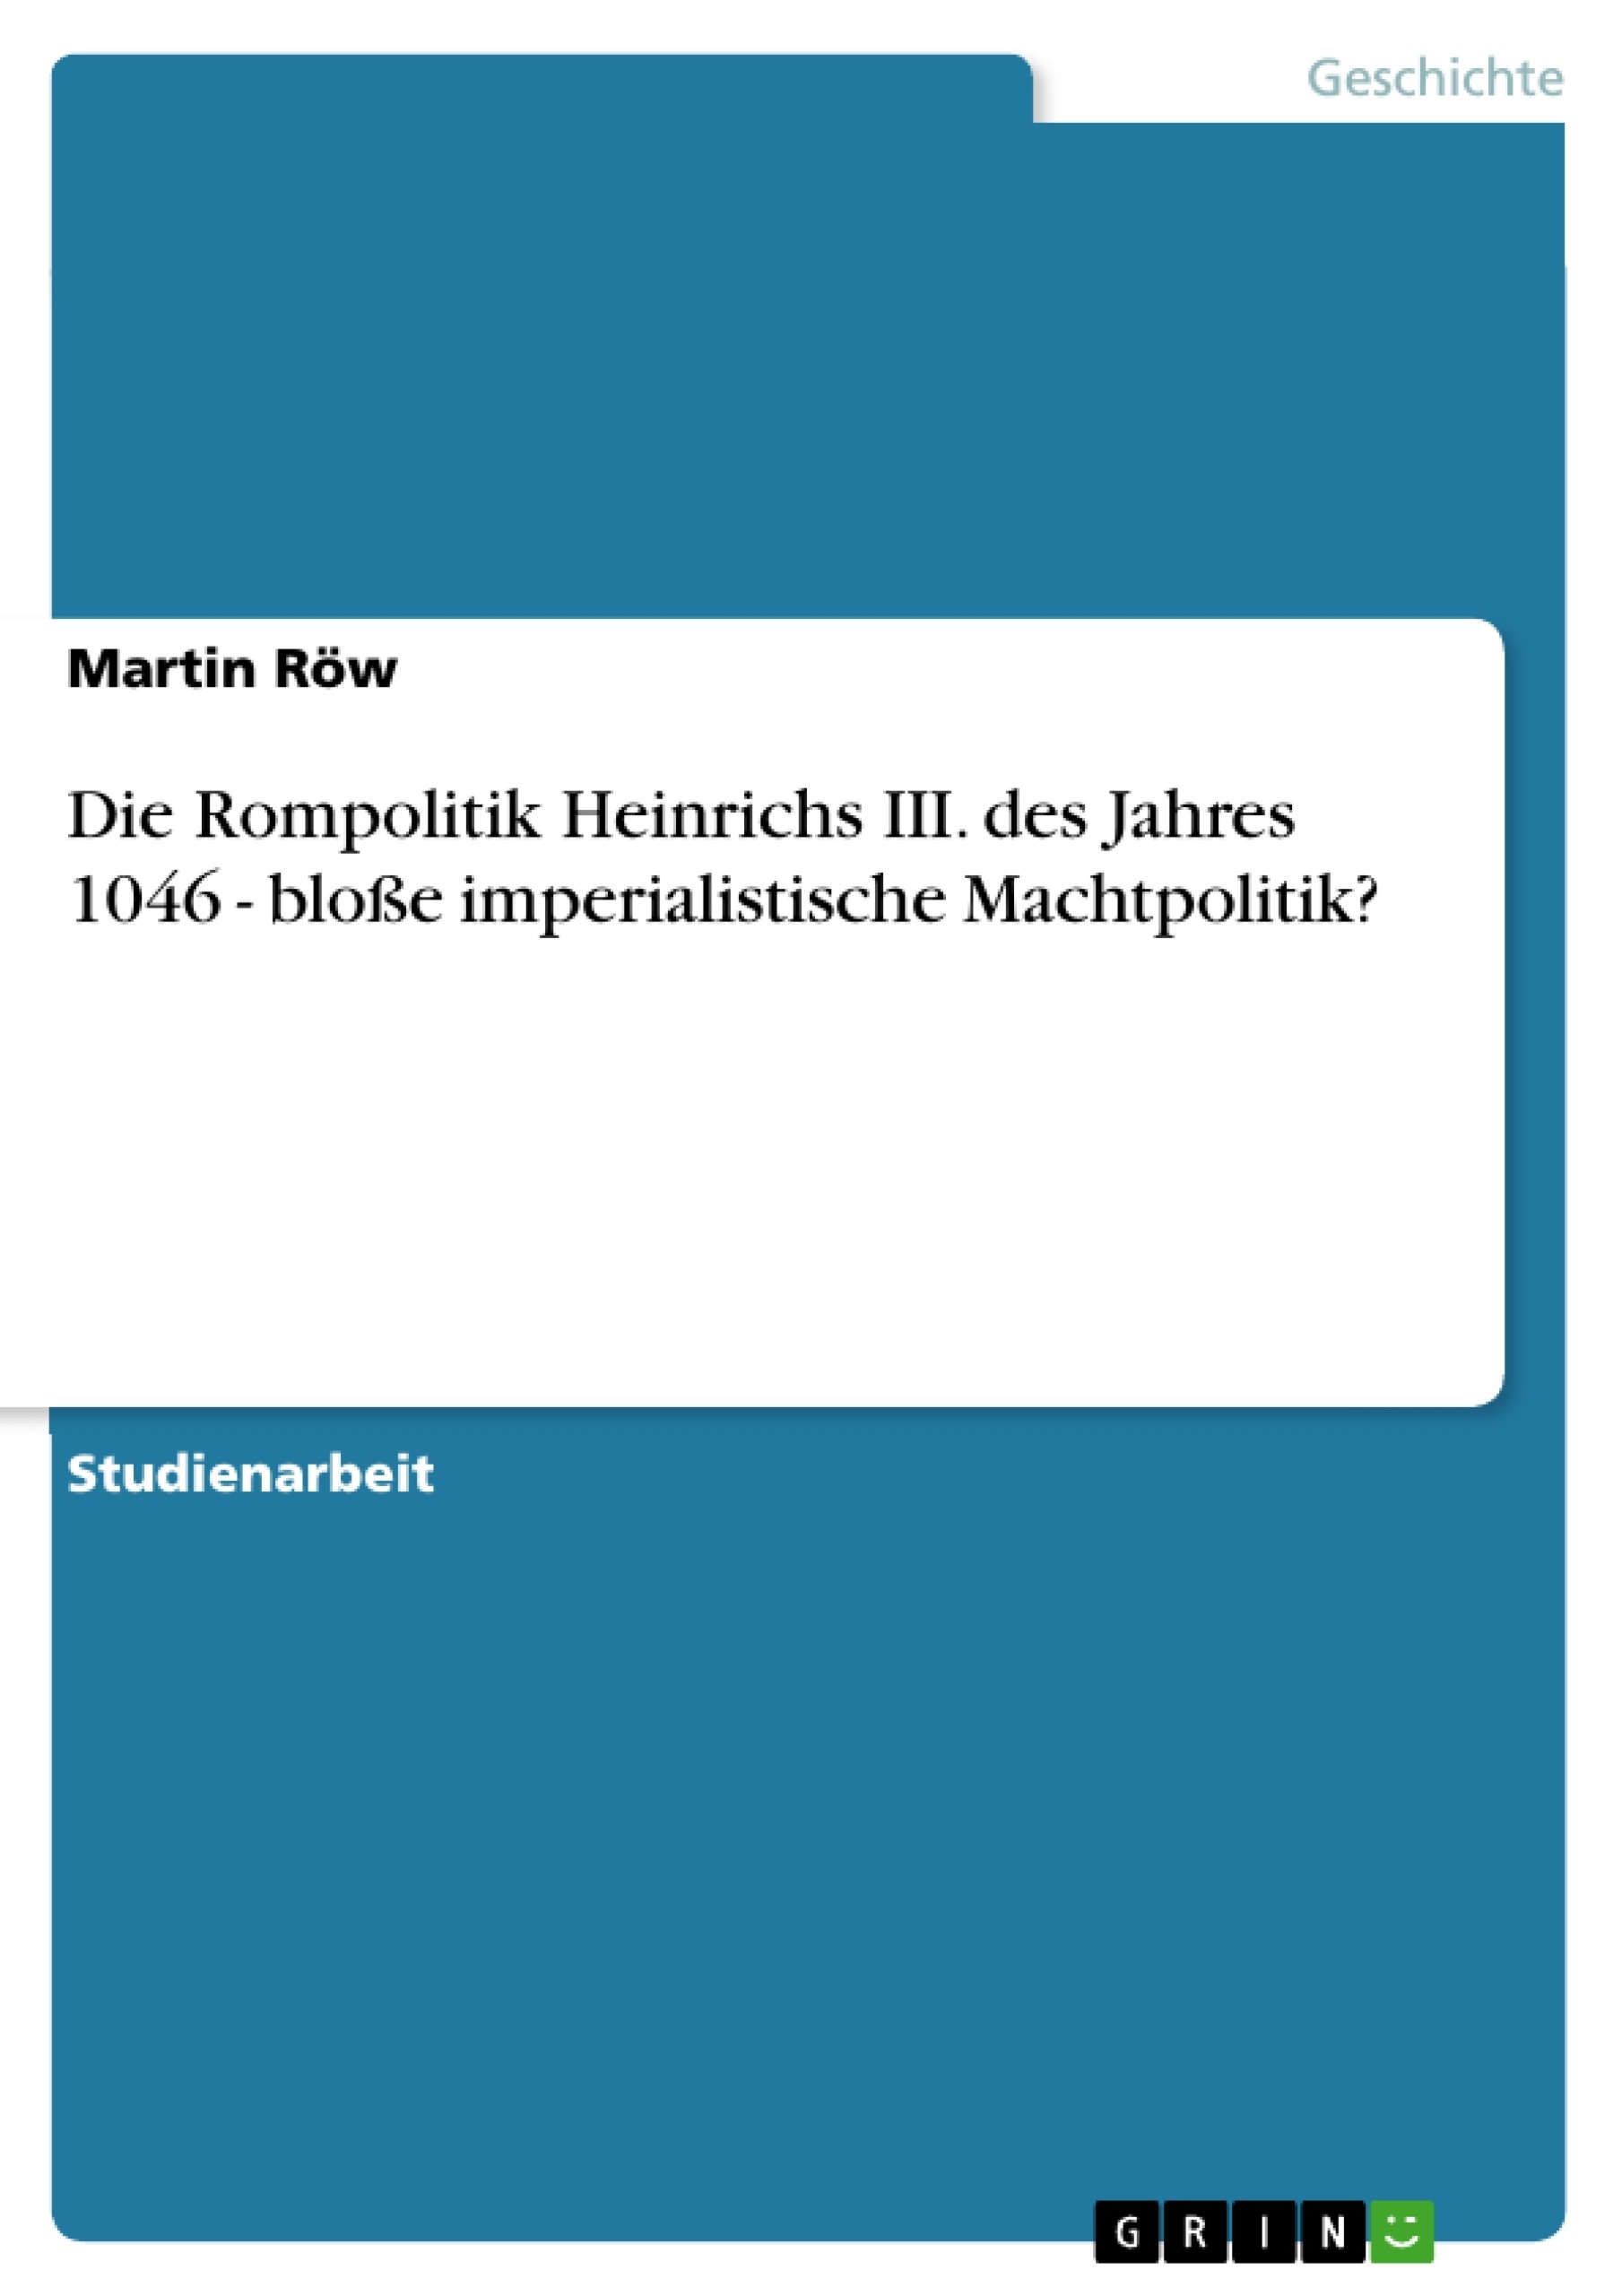 Titre: Die Rompolitik Heinrichs III. des Jahres 1046 - bloße imperialistische Machtpolitik?